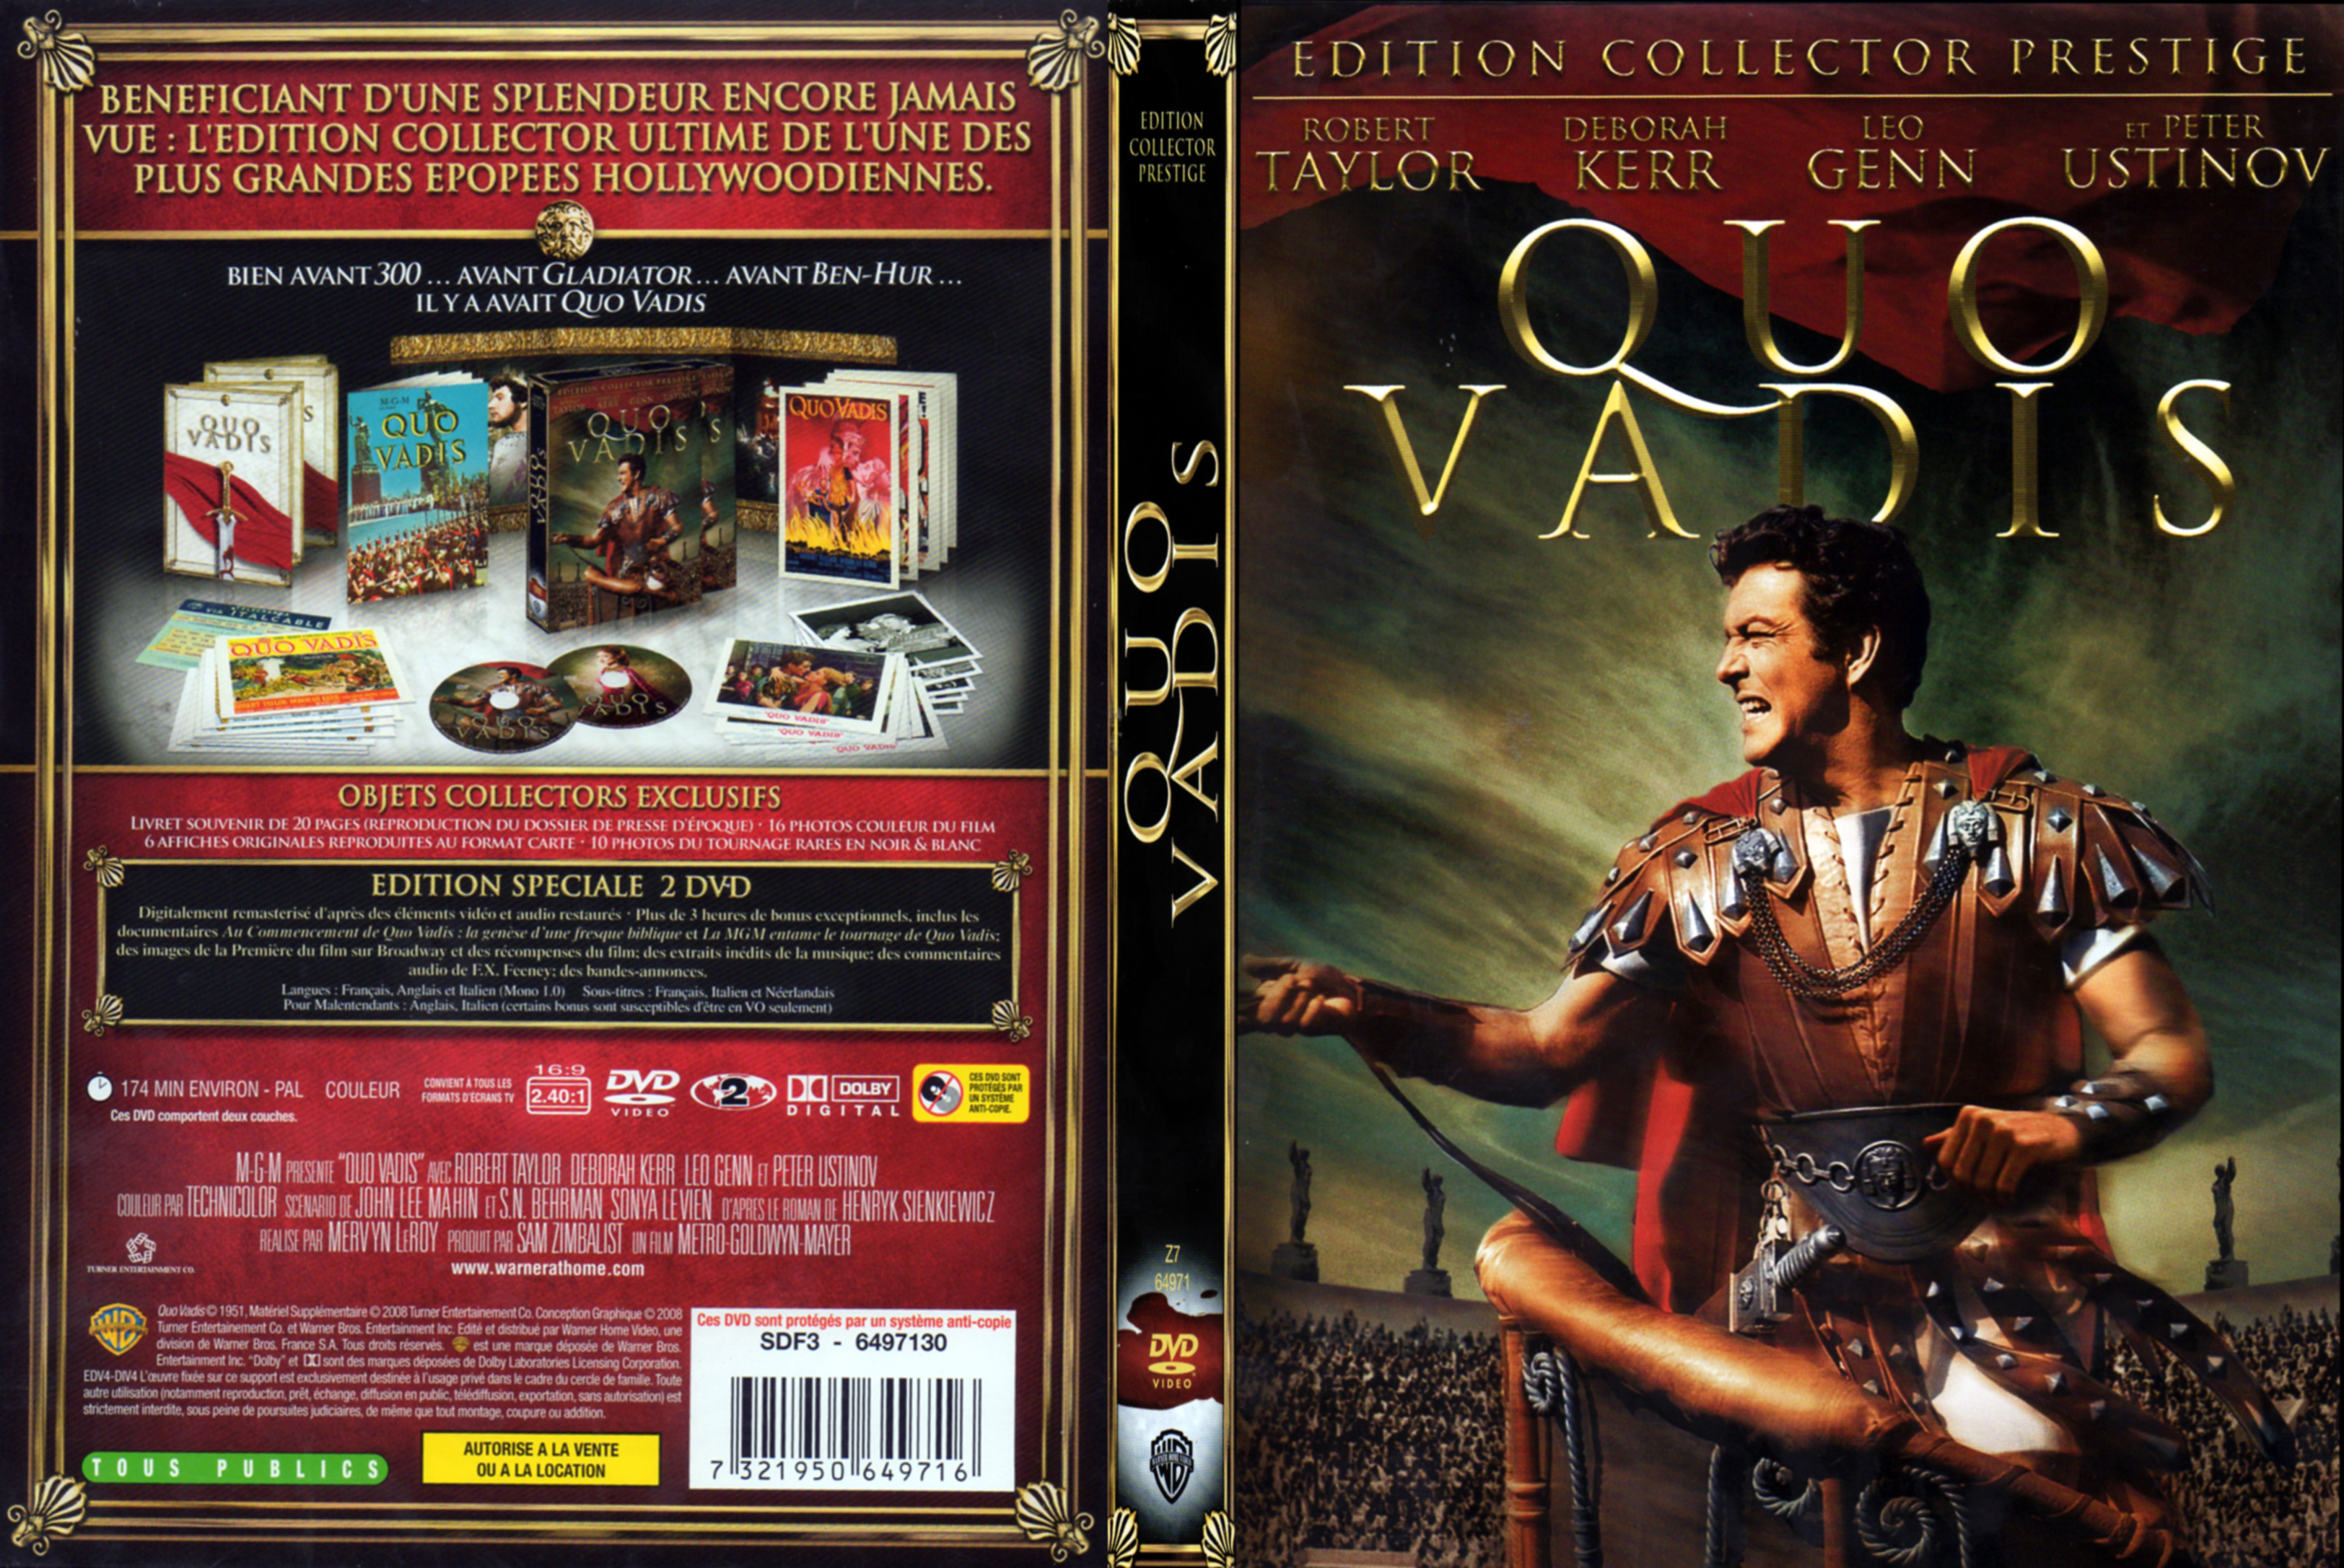 Jaquette DVD Quo vadis